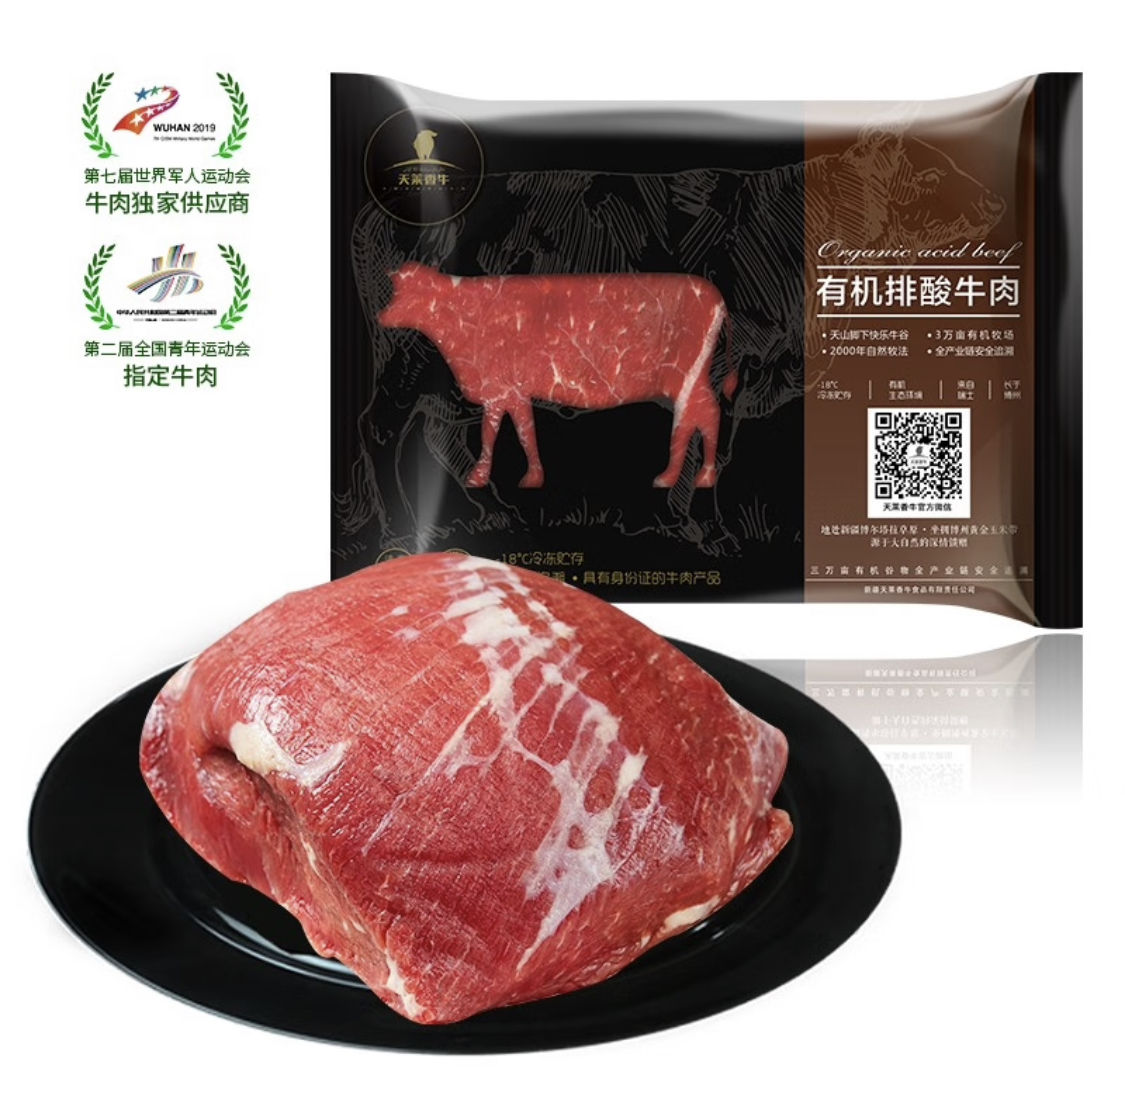 PLUS会员，需首购:天莱香牛 国产新疆 有机原切牛腿肉500g*2件+凑单 87.46元包邮（折38.5元/件，主商品77元+凑单10.45元）